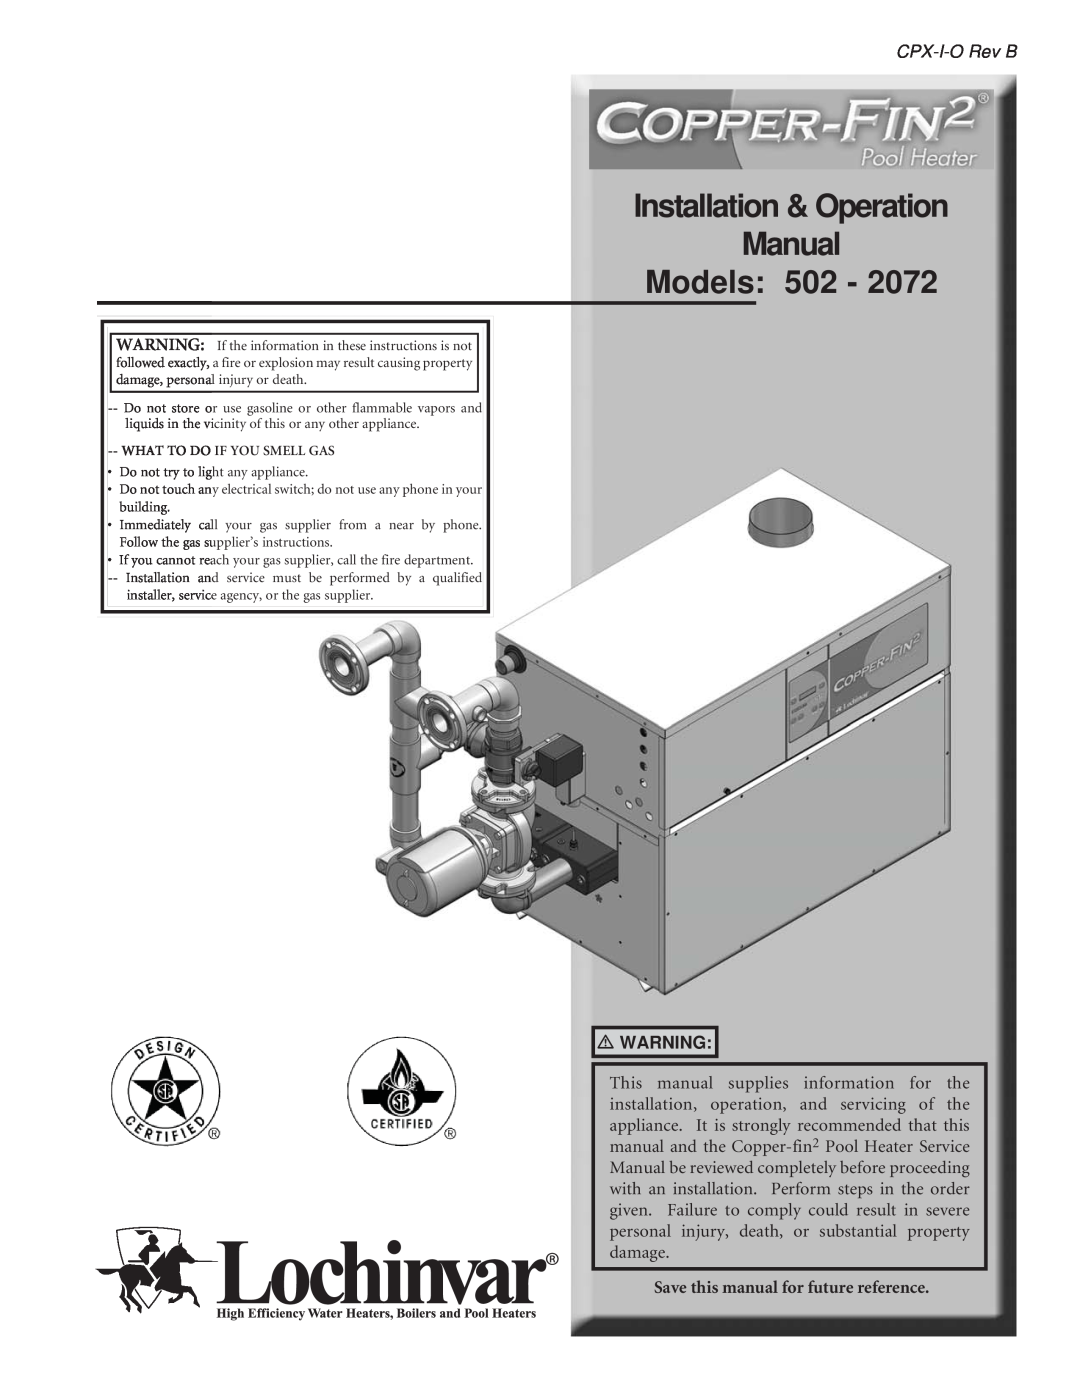 Lochinvar 2072 operation manual Installation & Operation Manual Models: 502, CPX-I-ORev B 